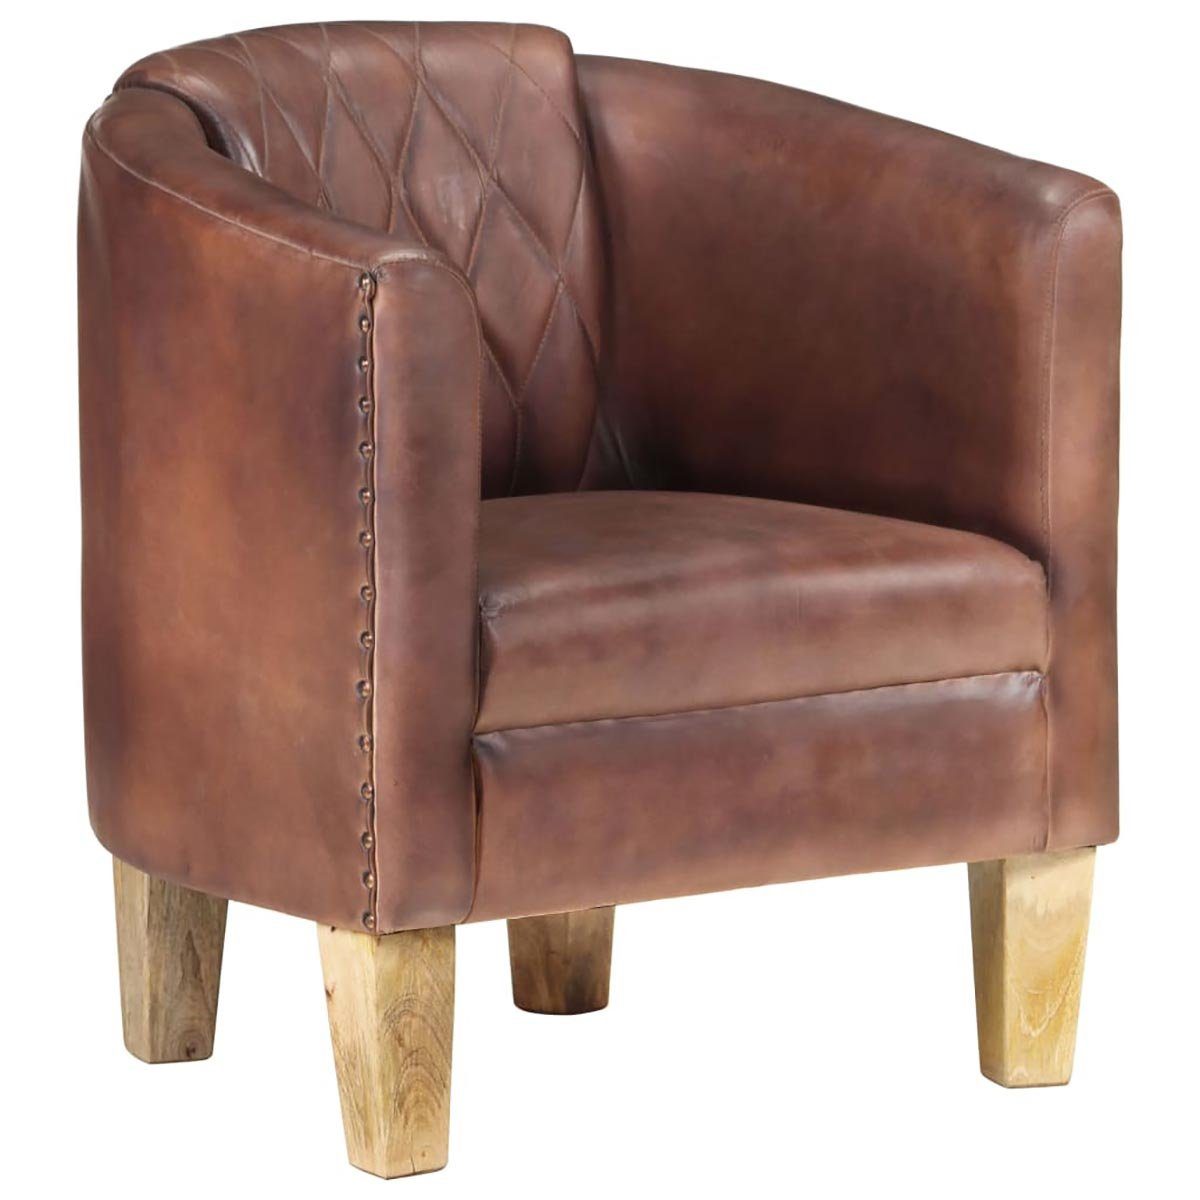 DOTMALL Stuhl Tub Chair Distressed Brown Echtleder mit stilvollem Design